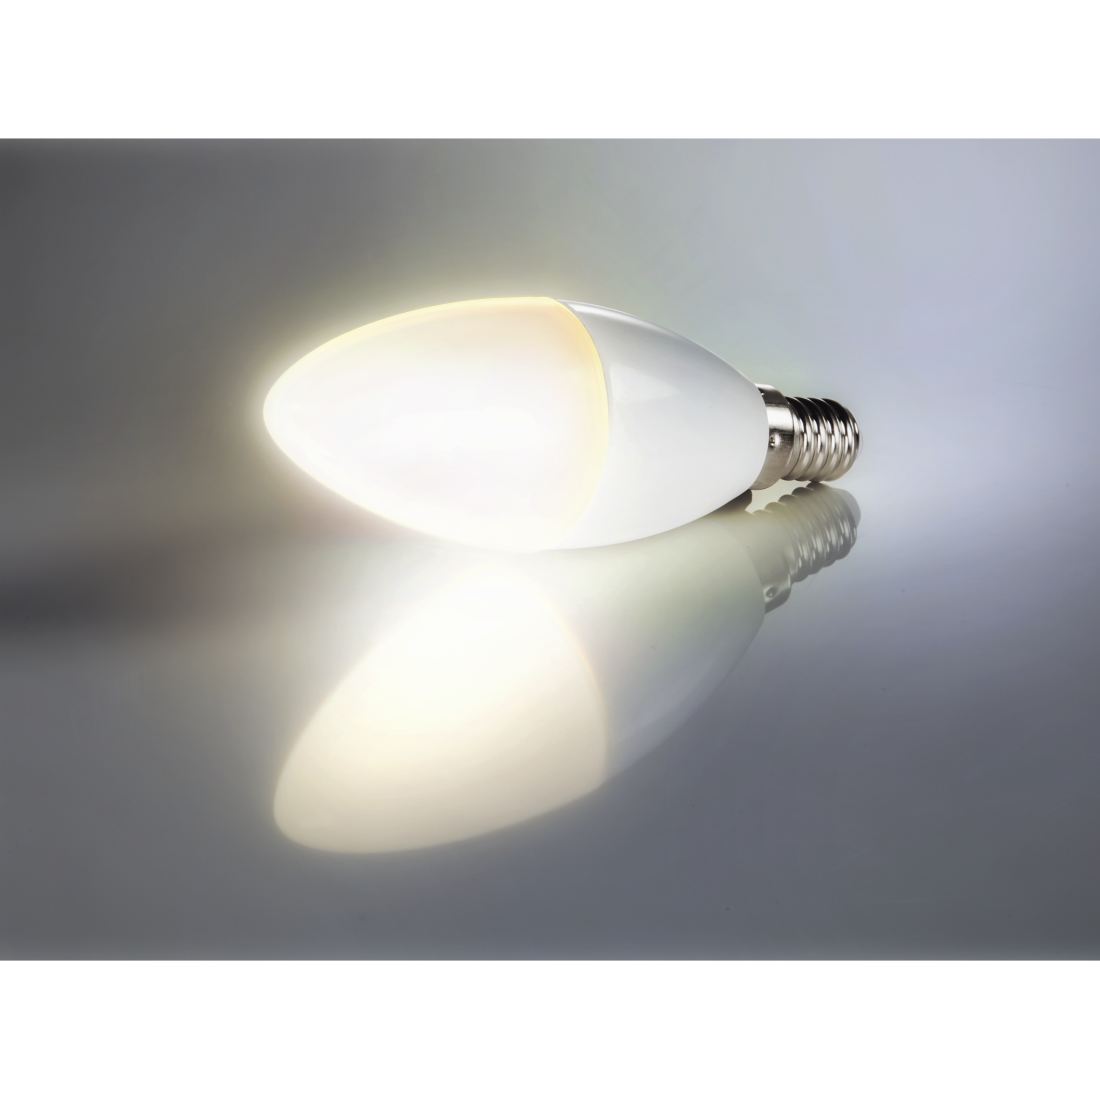 abx4 High-Res Image4 - Xavax, Ampoule LED, E14, 470lm rempl. ampoule bougie 40 W, blanc chaud, régl.